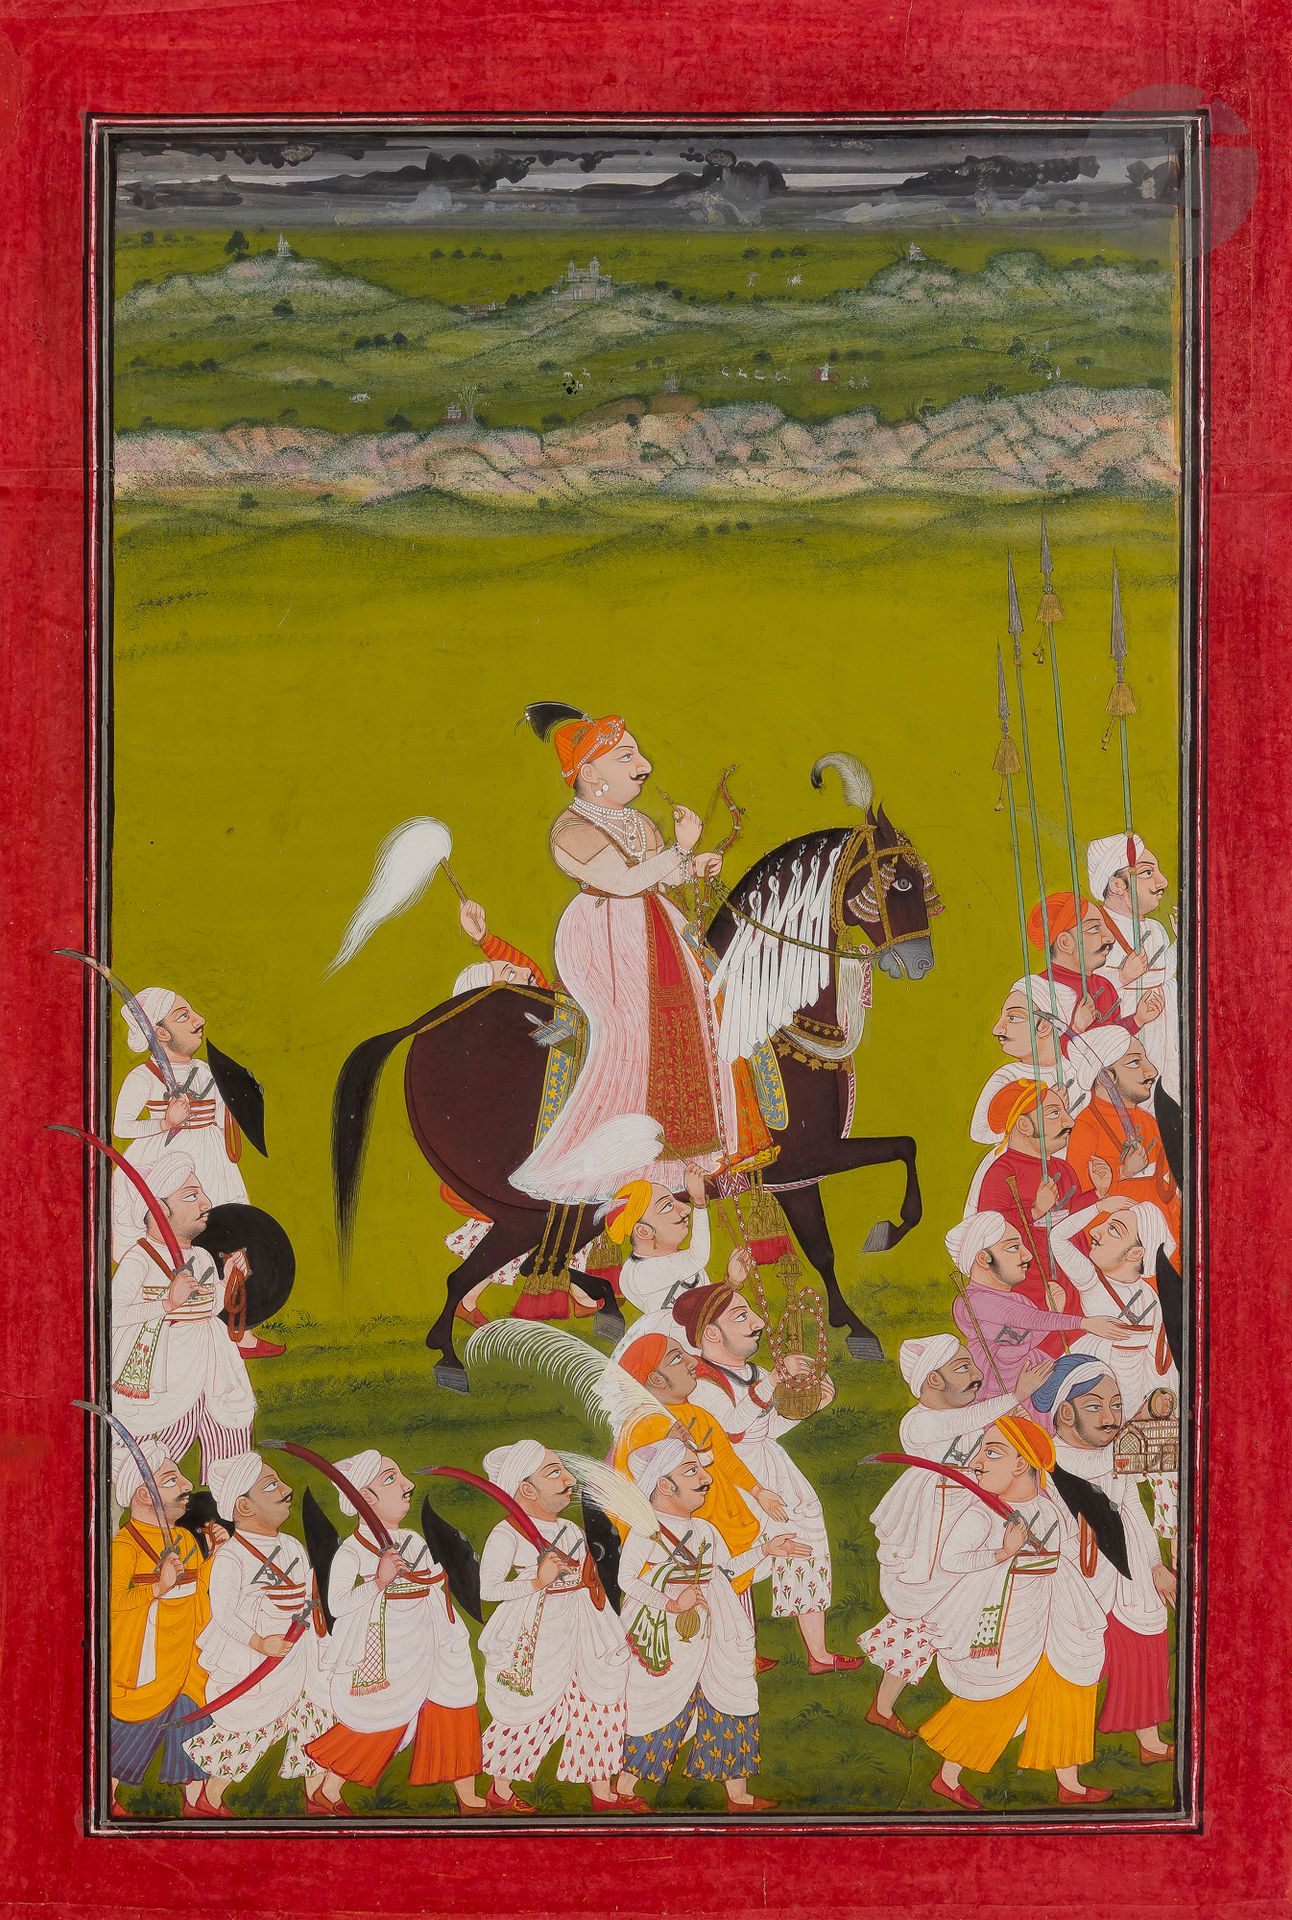 Null 游行中的拉贾，北印度，拉贾斯坦邦，梅瓦尔，约1765年
纸上颜料和黄金描绘了一个骑在马背上的拉贾从他的坐骑顶部抽出胡卡，握着缰绳的手拿着弓。在他周围，&hellip;